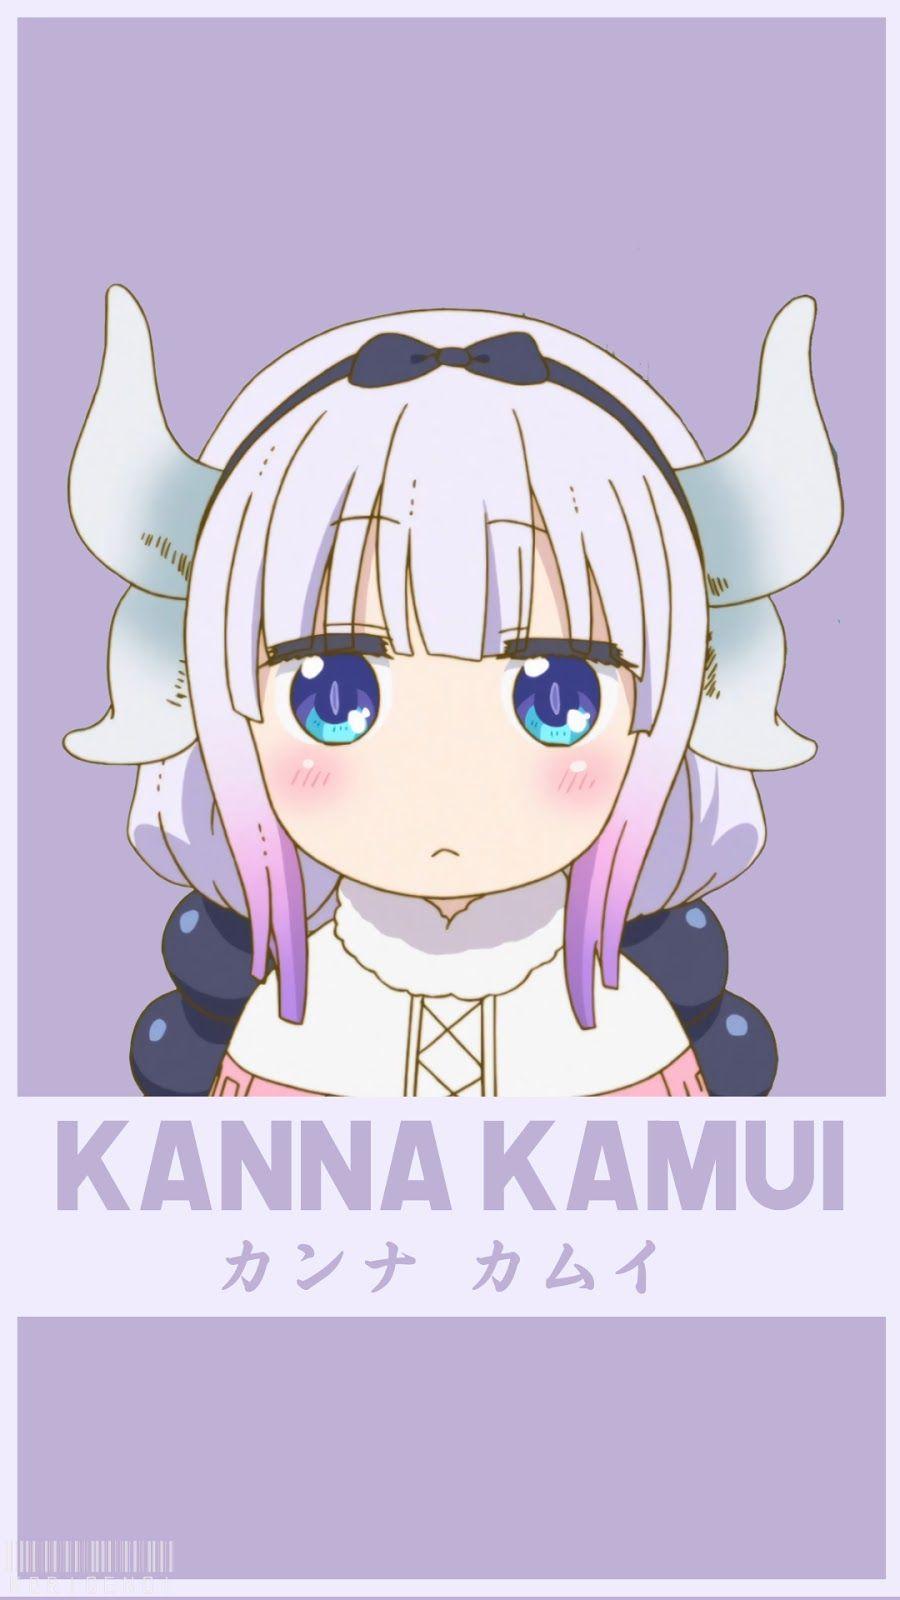 Kanna Kamui. Korigengi. Maids, Kobayashi san and Dragons